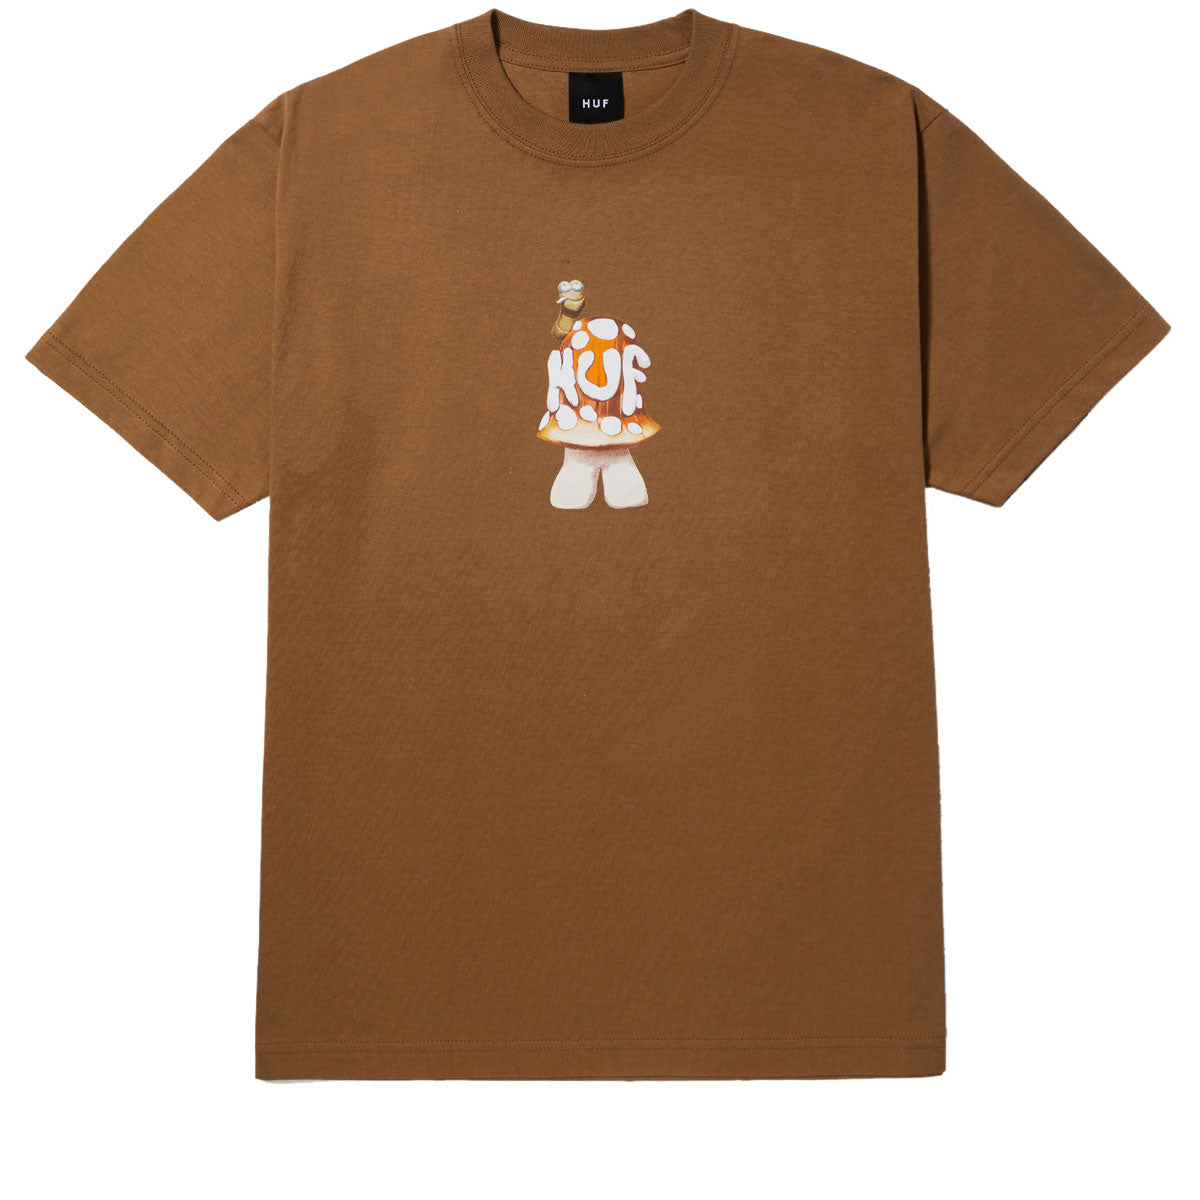 HUF Shroomery T-Shirt - Camel image 1